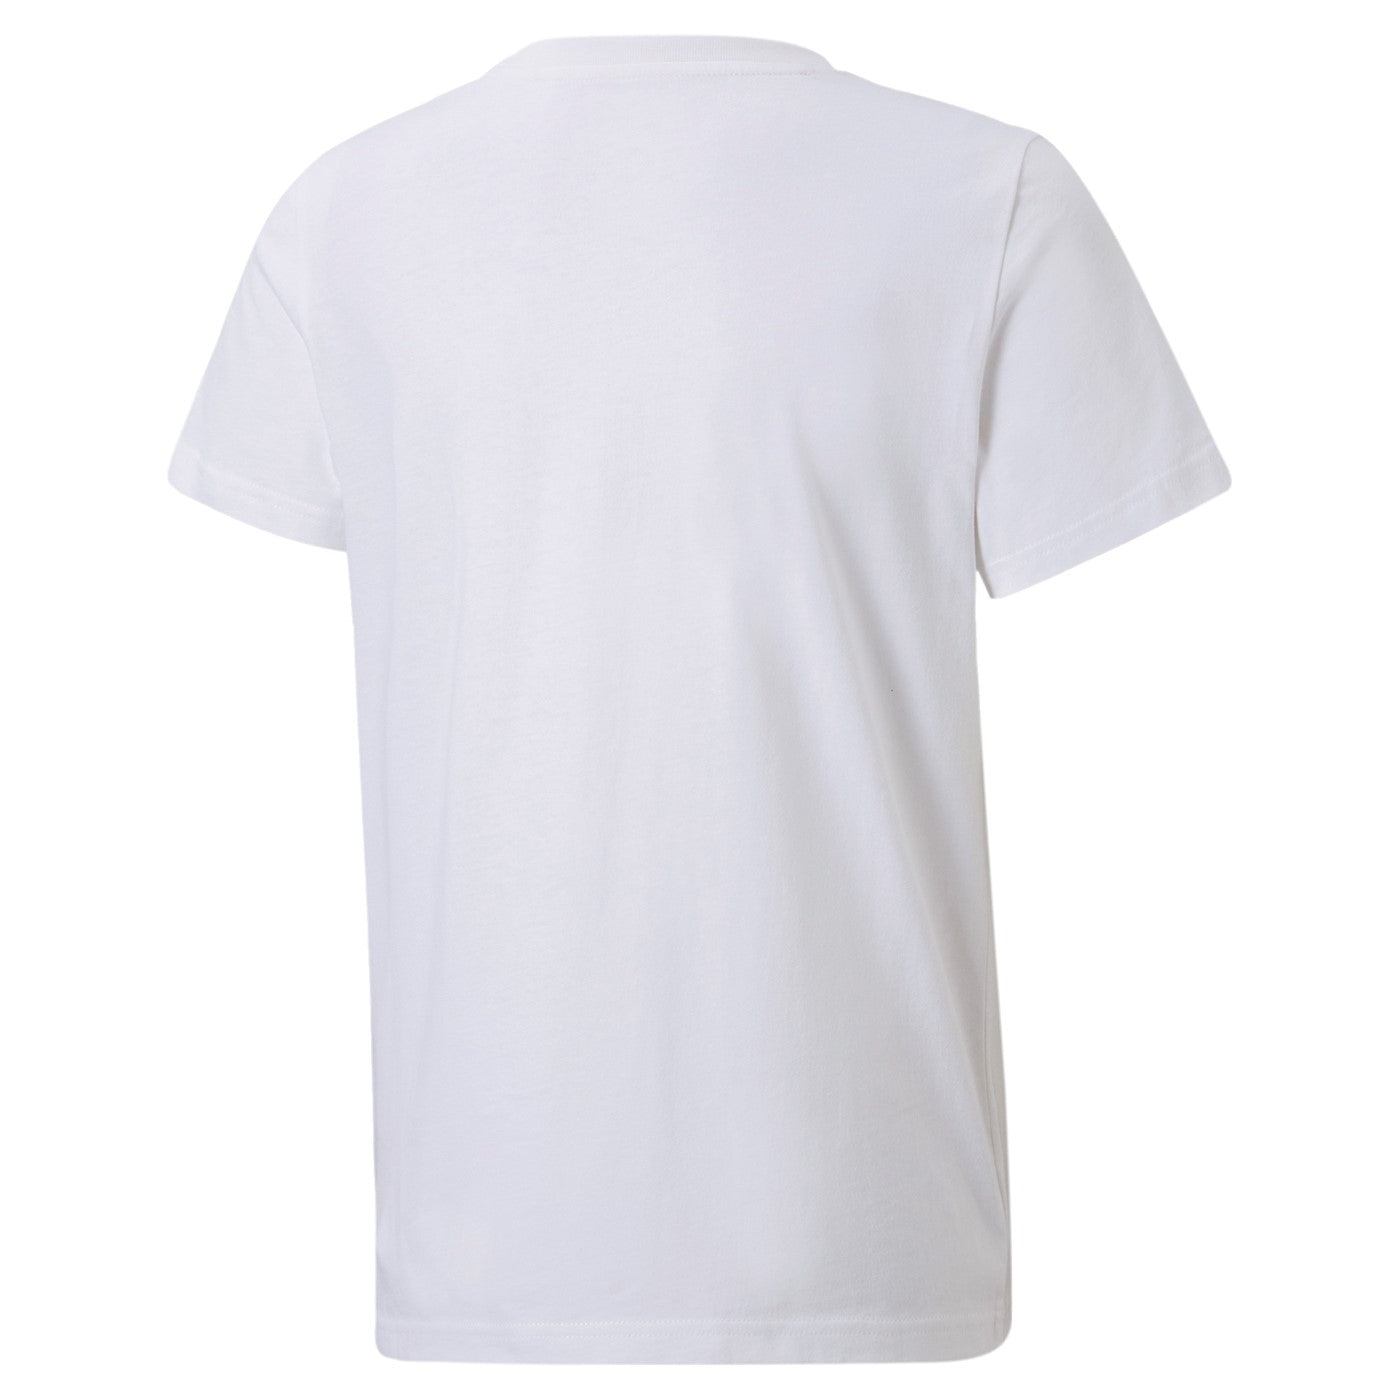 Puma maglietta manica corta da bambino Active Sports Graphic 846993 02 bianco